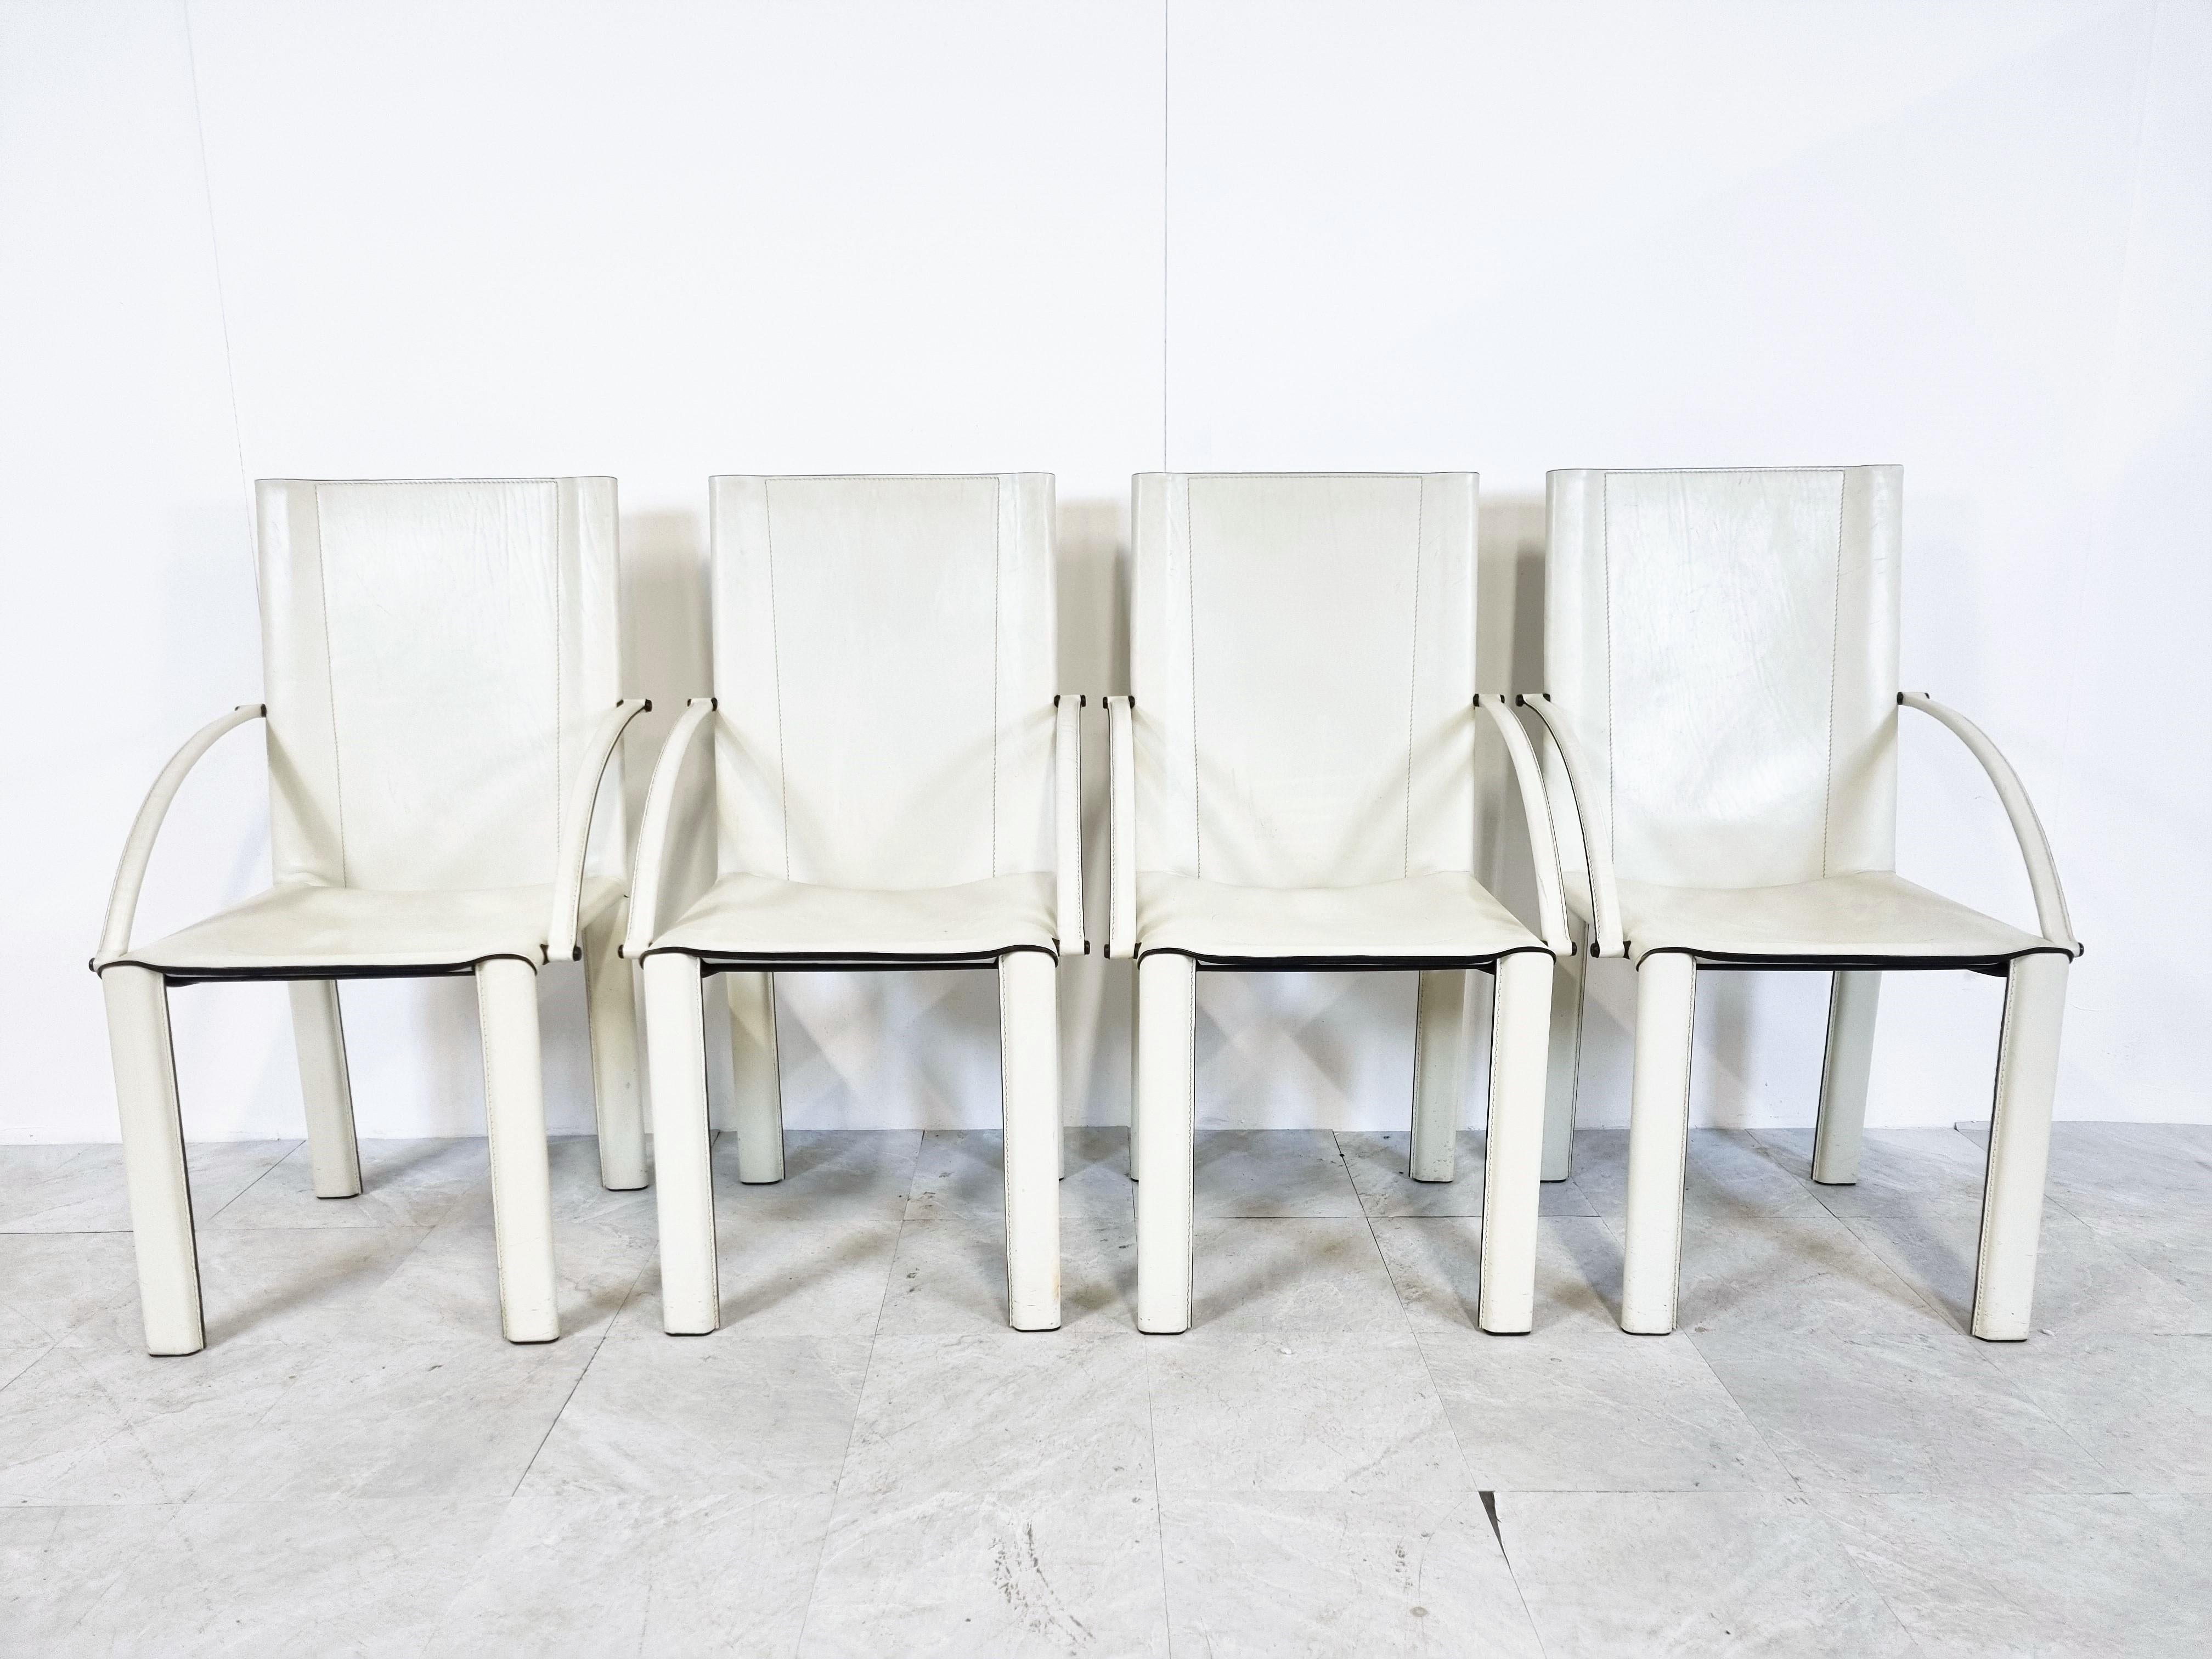 Chaises de salle à manger vintage en cuir blanc, conçues par Carlo Bartoli pour Matteo Grassi. Modèle Carol

Chaises de salle à manger confortables avec accoudoirs.

Bon état général

années 1980 - Italie

Dimensions
Hauteur :